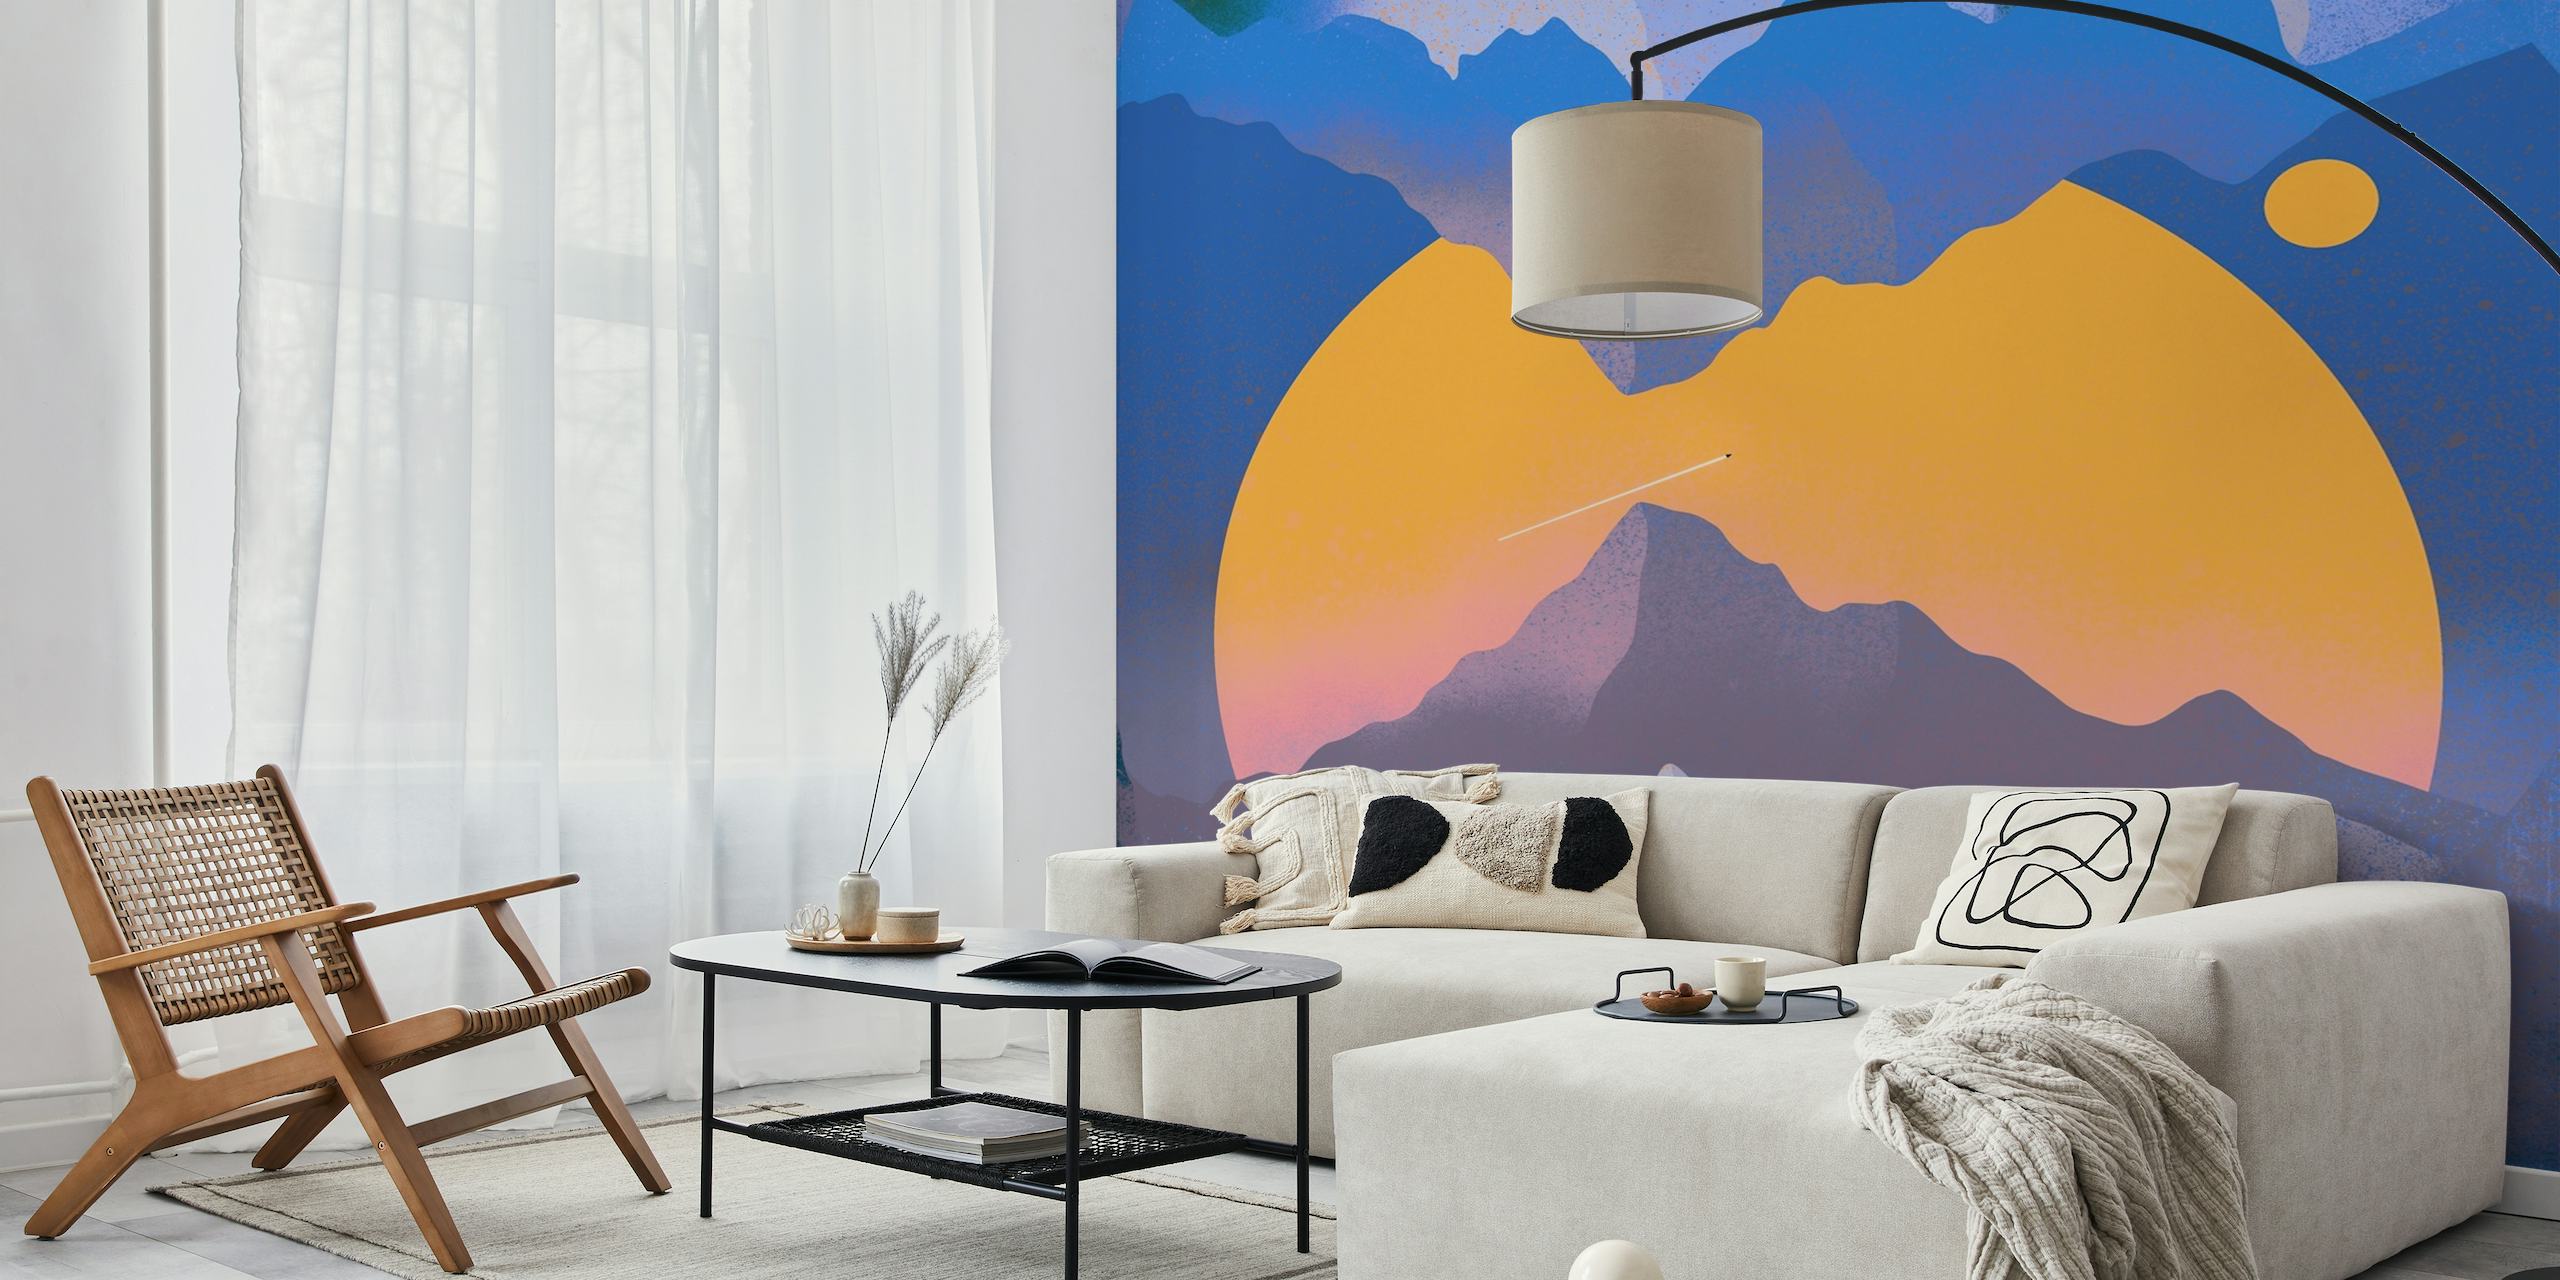 Abstrakt vægmaleri med rumtema med bjerge og stiliseret orange planet